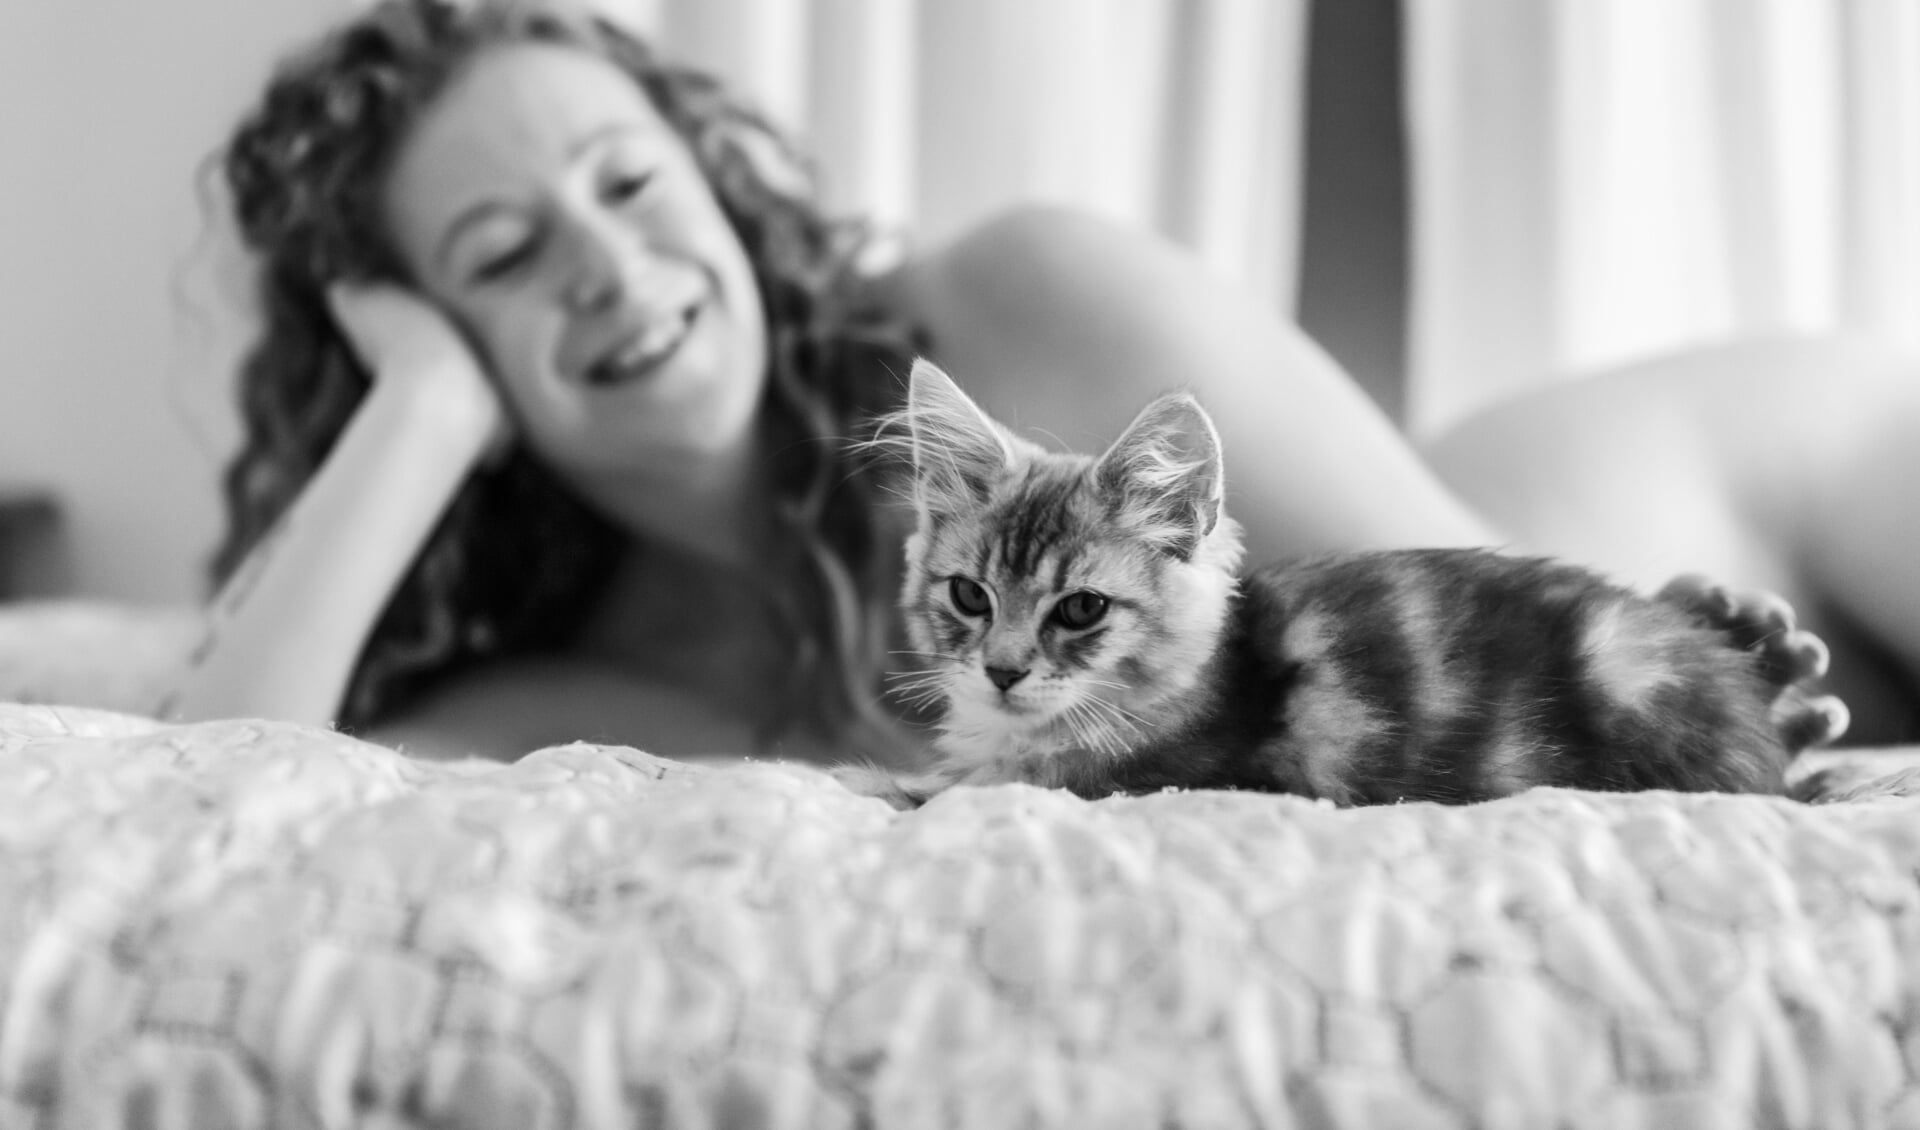 Vrouwelijk naakt en katten roepen vaak een zacht en warm beeld op en dat zie je op de foto's (foto: Susanne van der Kleij).